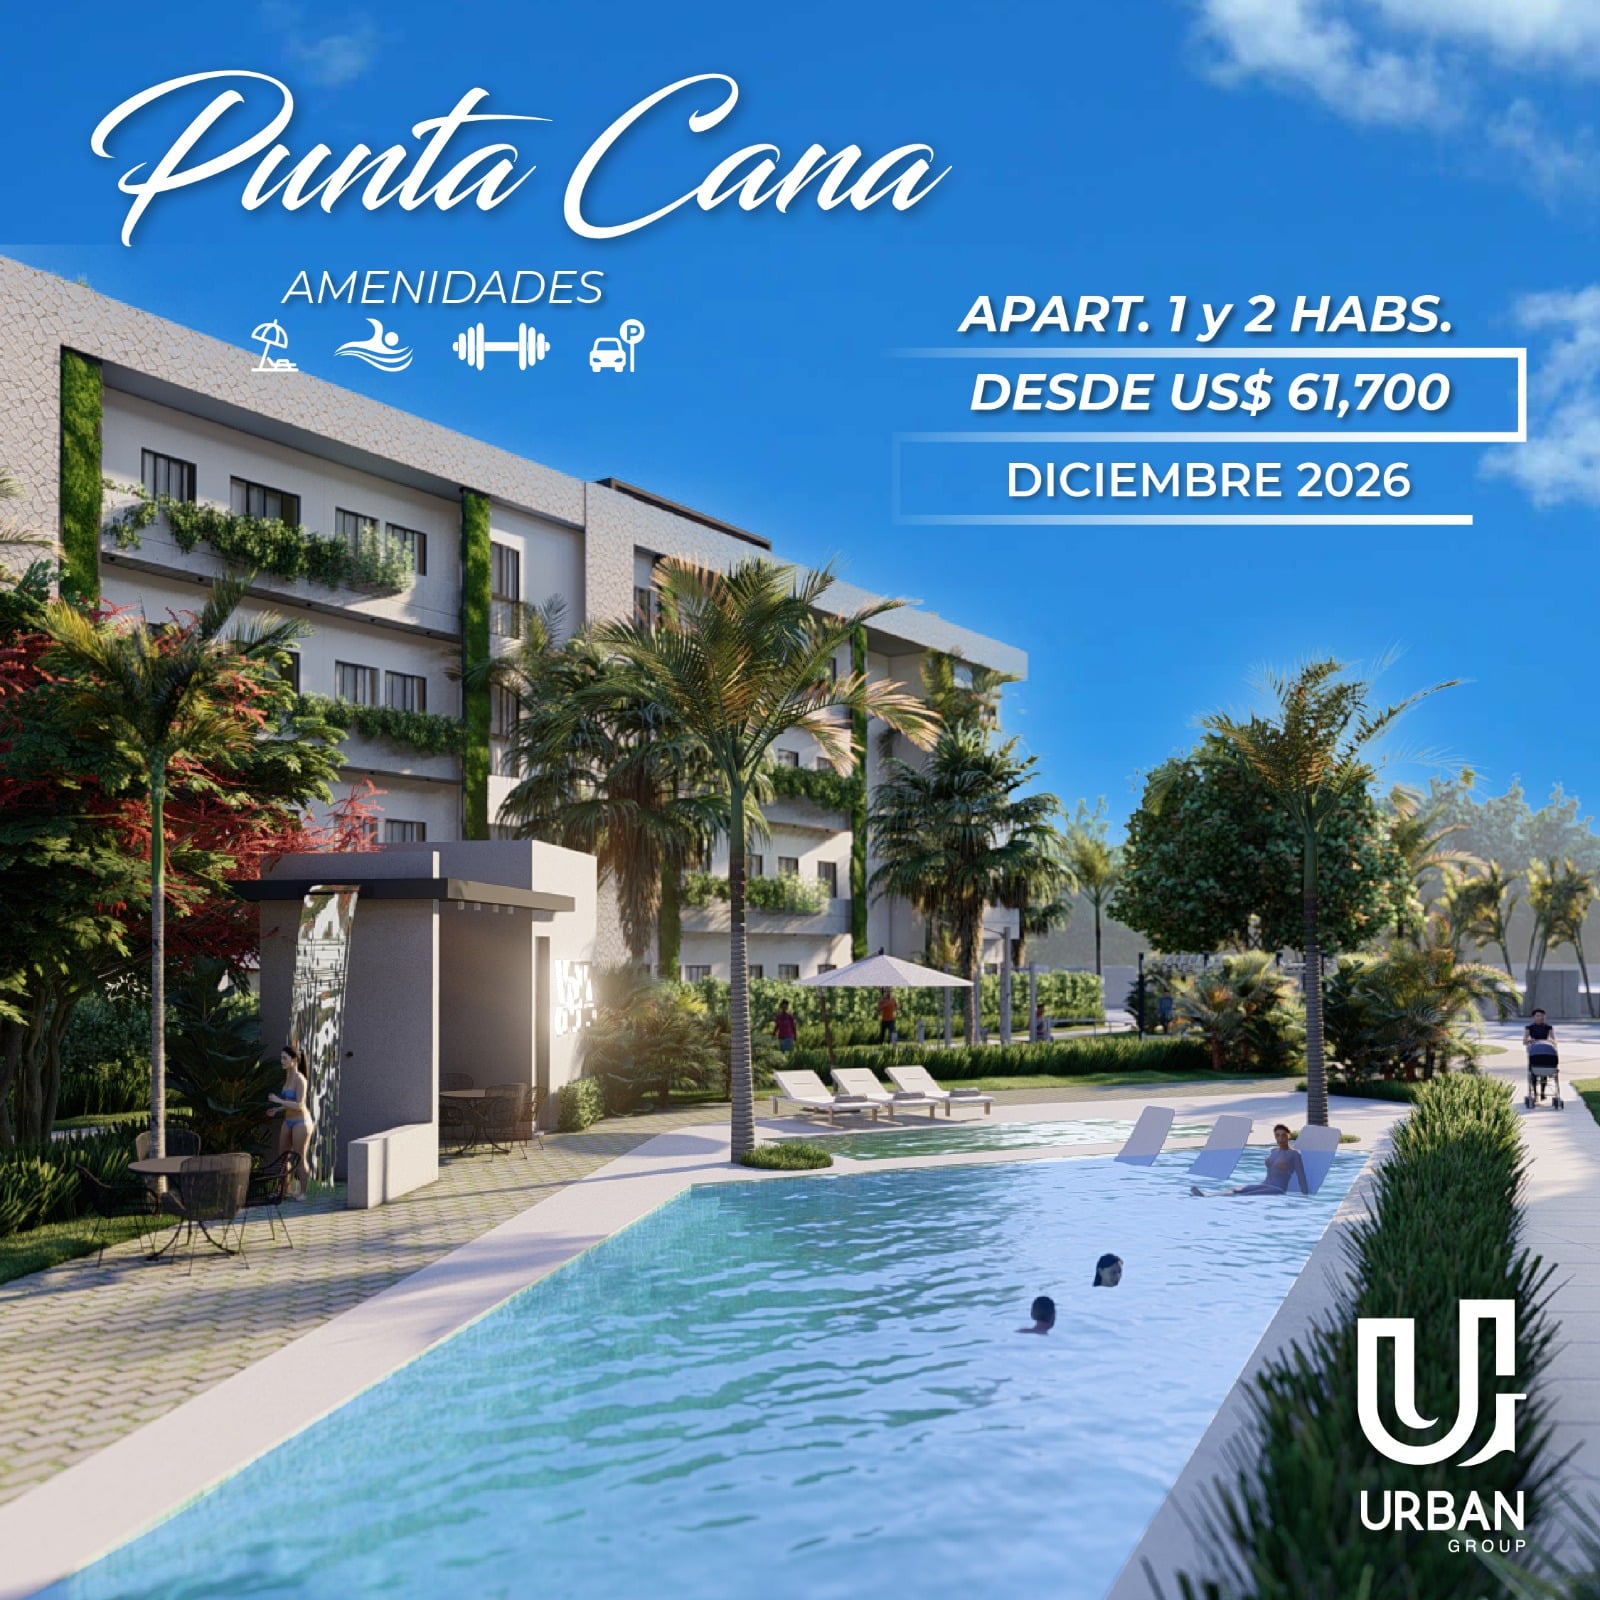 Apartamentos de 1 y 2 Habitaciones Desde US$61,700 en Punta Cana